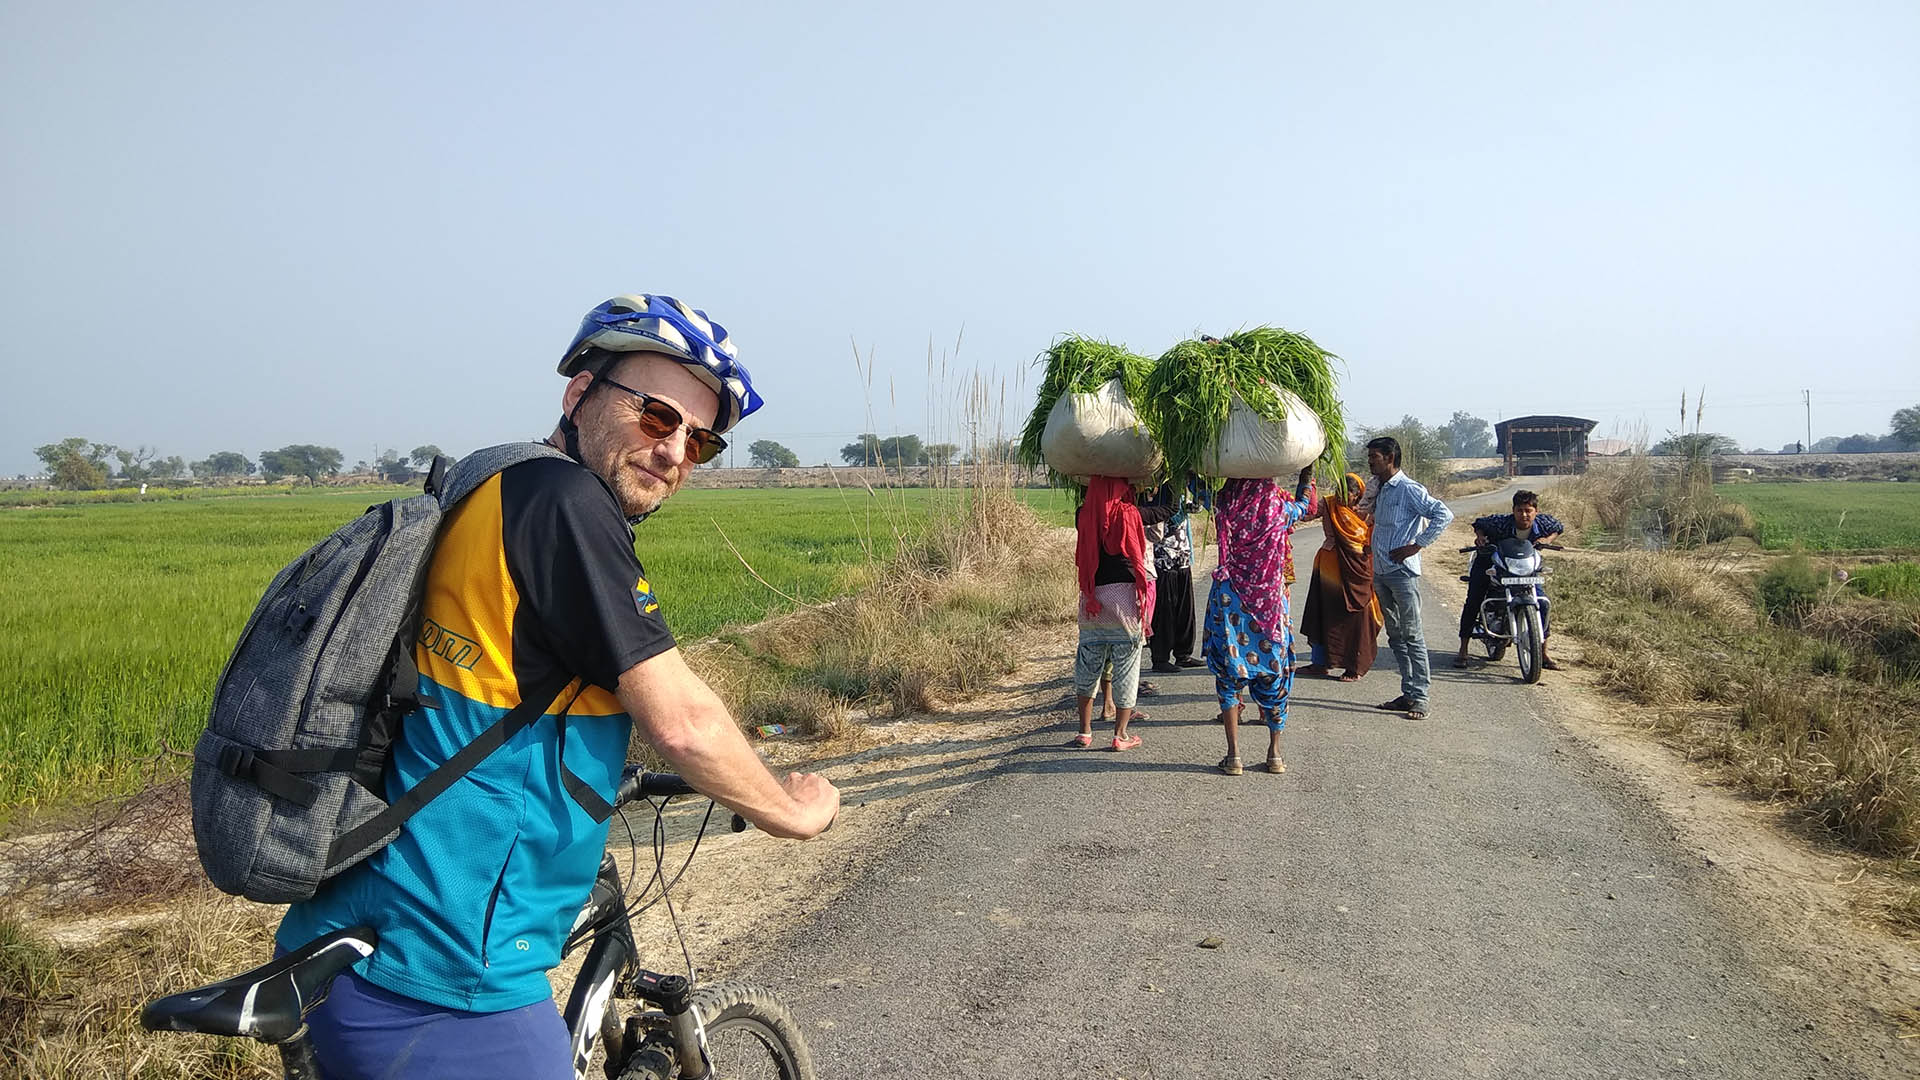 Delhi Agra cycle tour - 2 Days